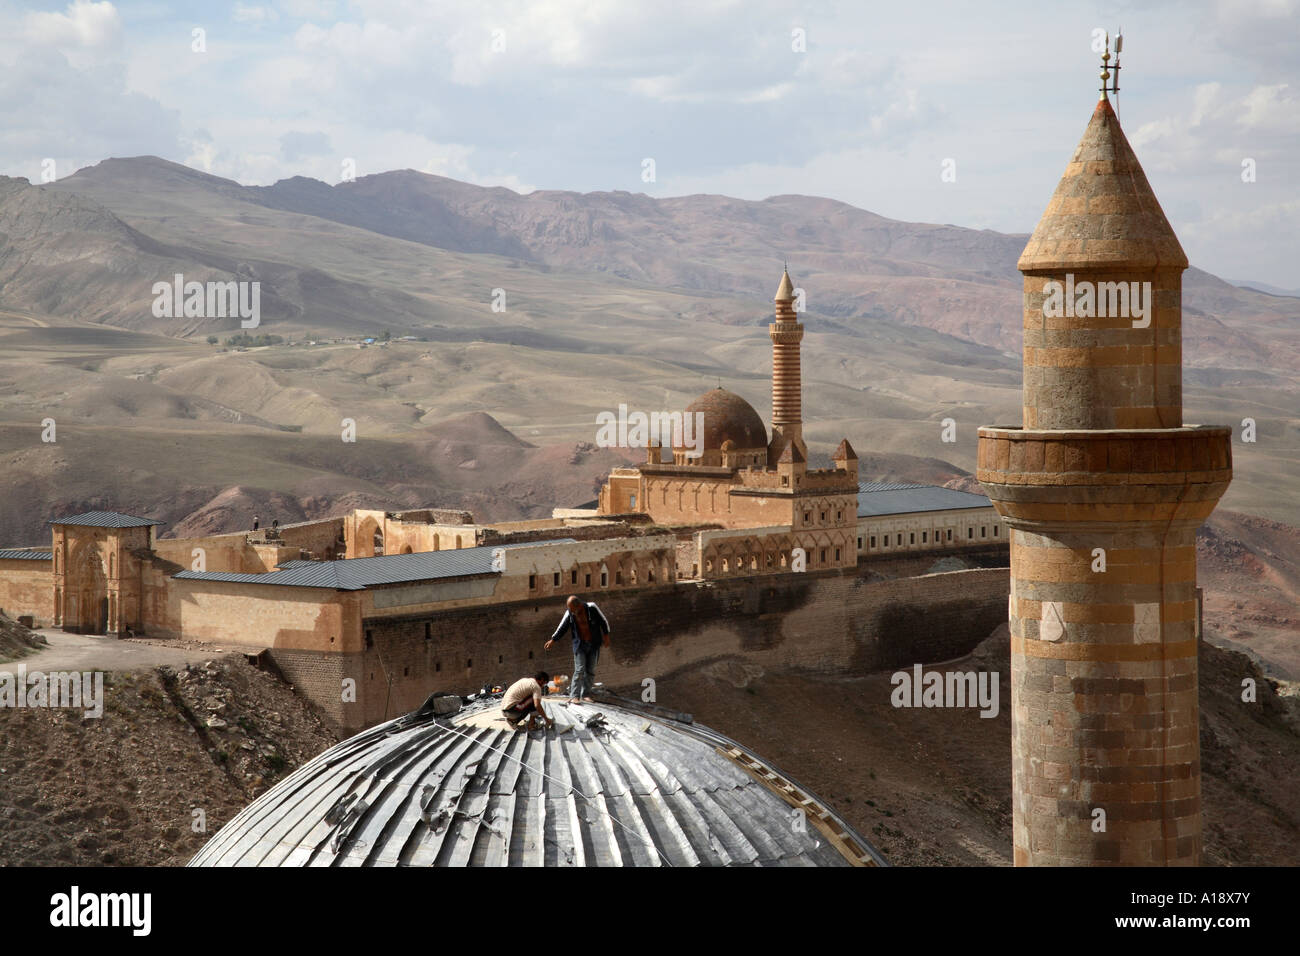 Men constructing roof on mosque in front of Ishak Pasha Palace. Dogubeyazit, Agri, Turkey Stock Photo